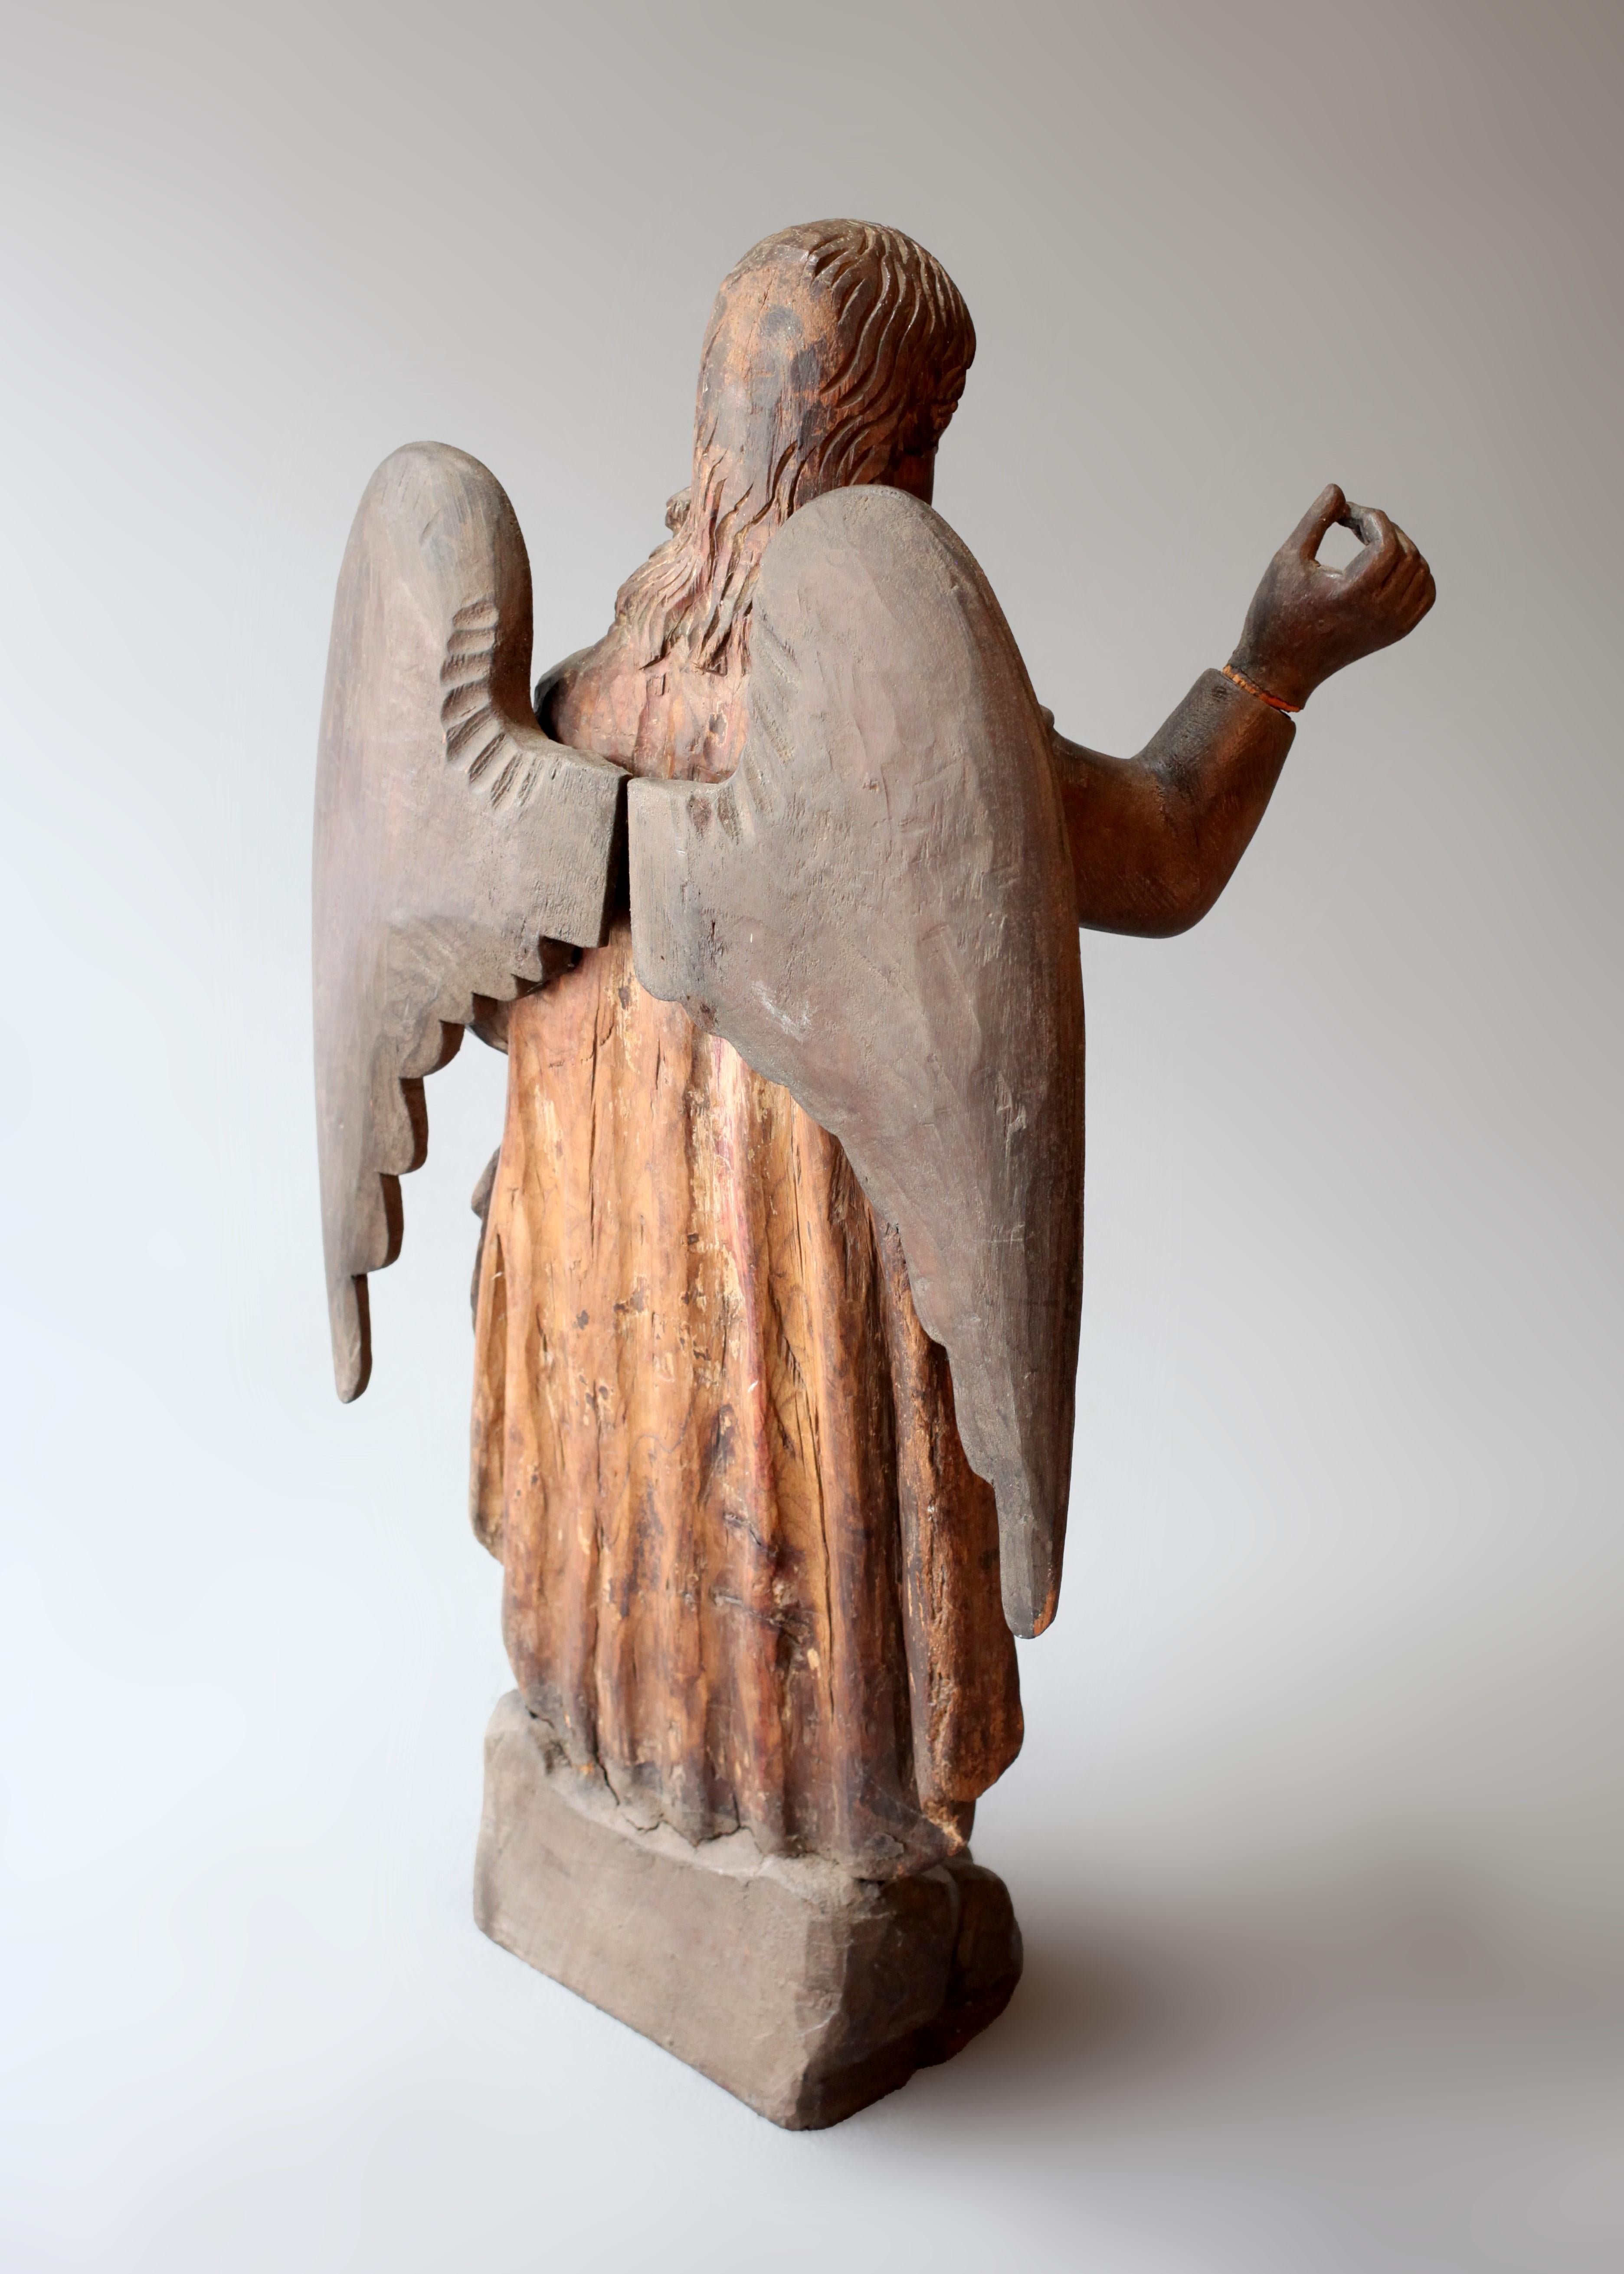 Au-delà du symbolisme et de l'artisanat, cette figure d'autel en bois sculpté guatémaltèque représentant l'ange Gabriel, datant du XVIIIe siècle, recèle une immense énergie et une grande importance historique. Les figurines d'autel sont des objets